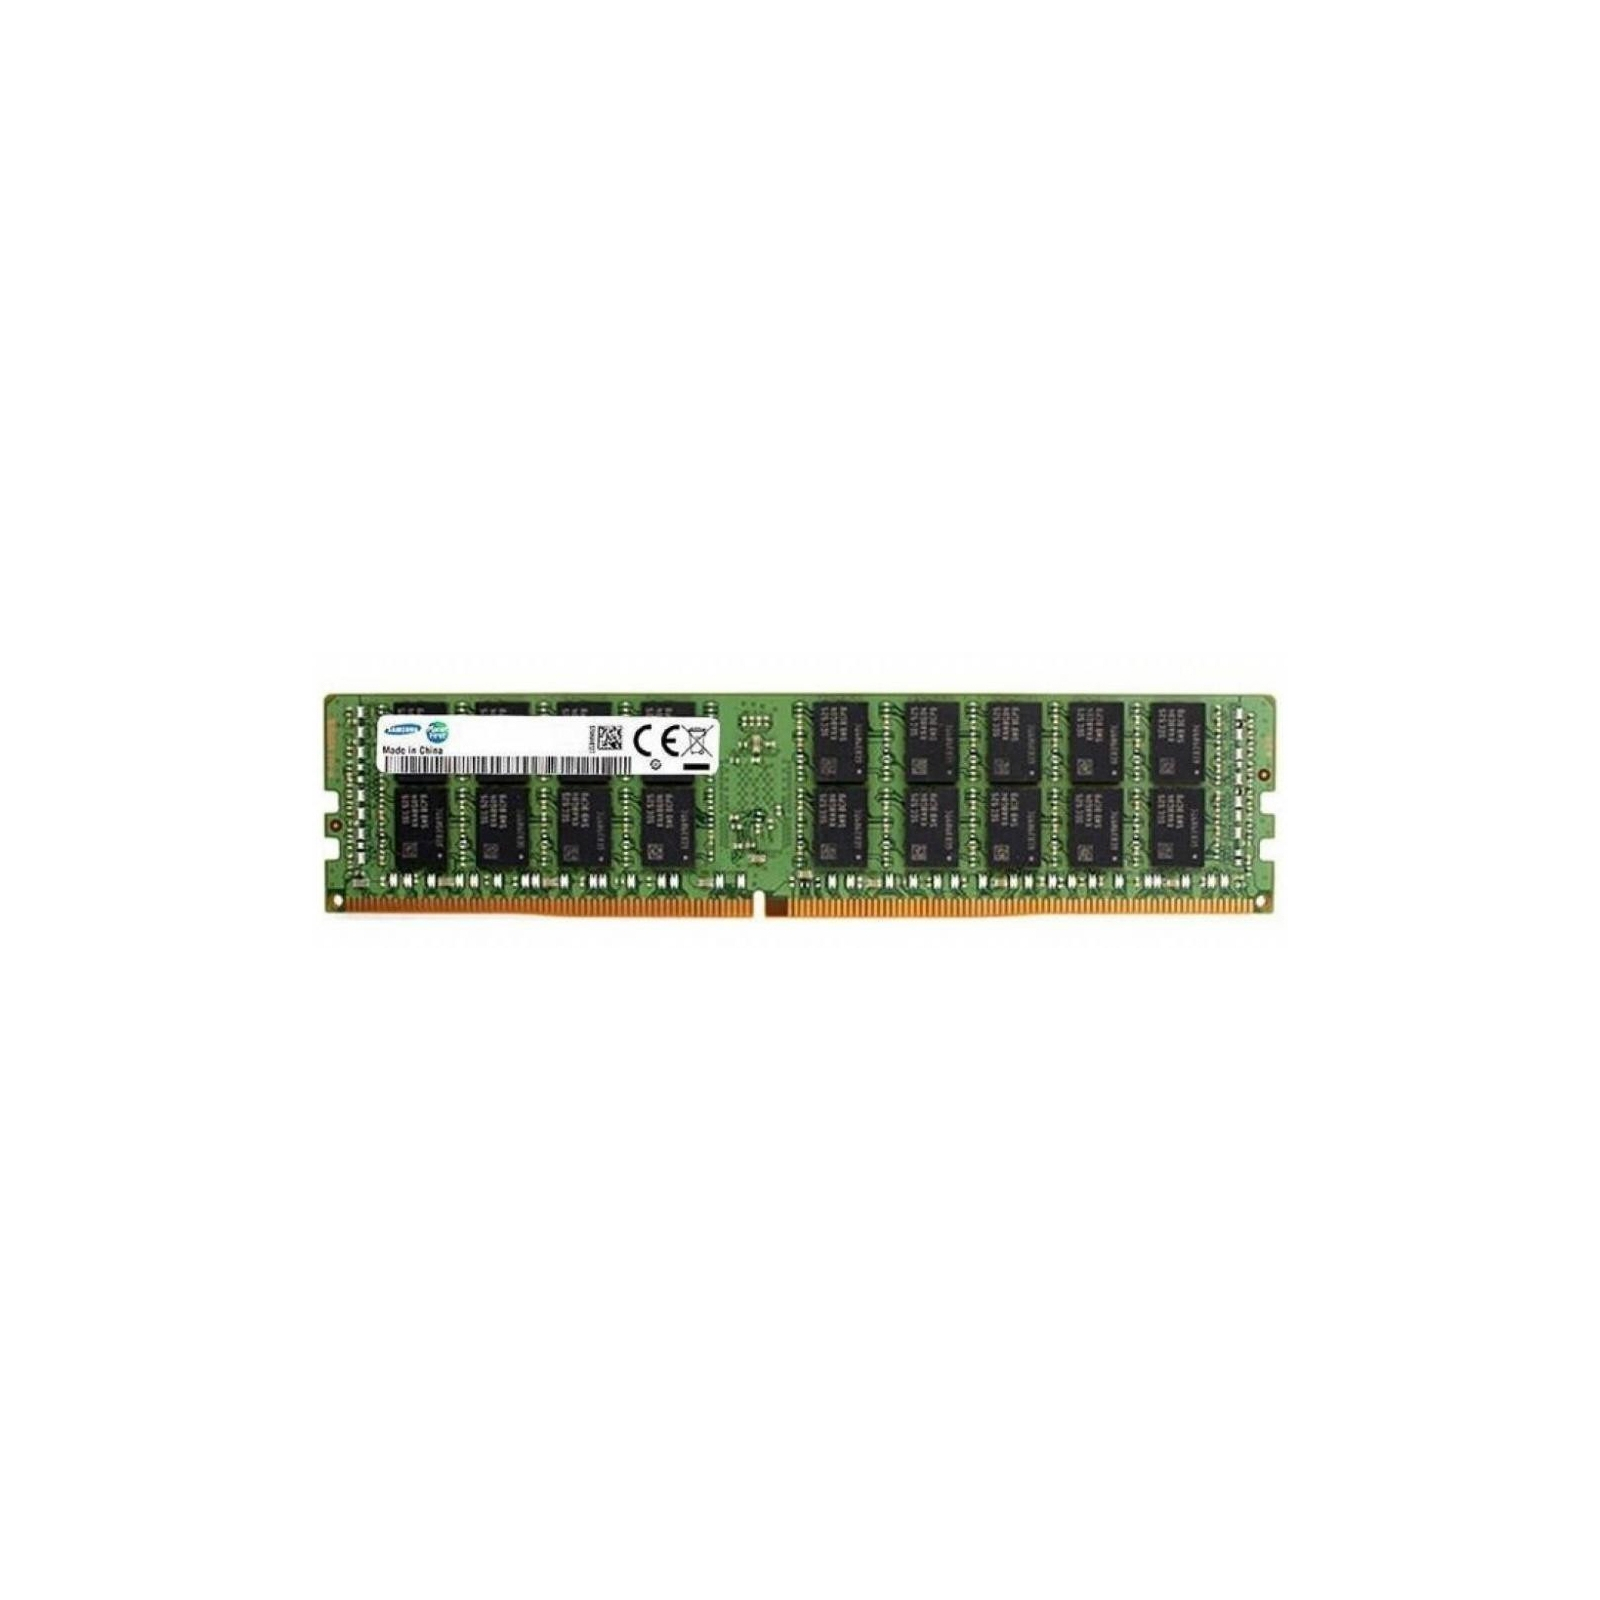 Модуль памяти для сервера DDR4 32GB ECC UDIMM 2666MHz 2Rx8 1.2V CL19 Samsung (M391A4G43MB1-CTD)